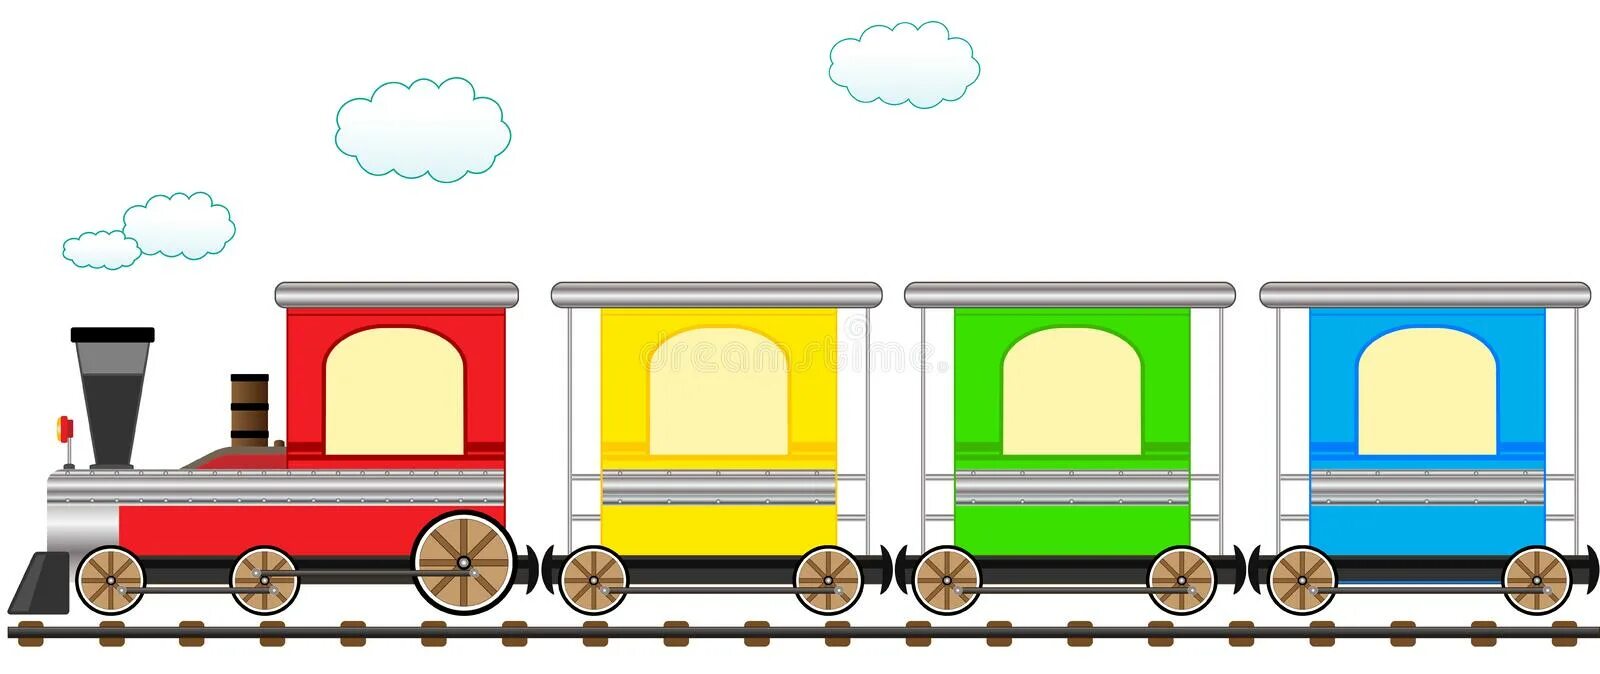 Поезд из вагонов разного назначения 5. Поезд с вагонами для детей. Паровоз для дошкольников. Паровоз с вагонами. Паровозик с вагонами для детей.